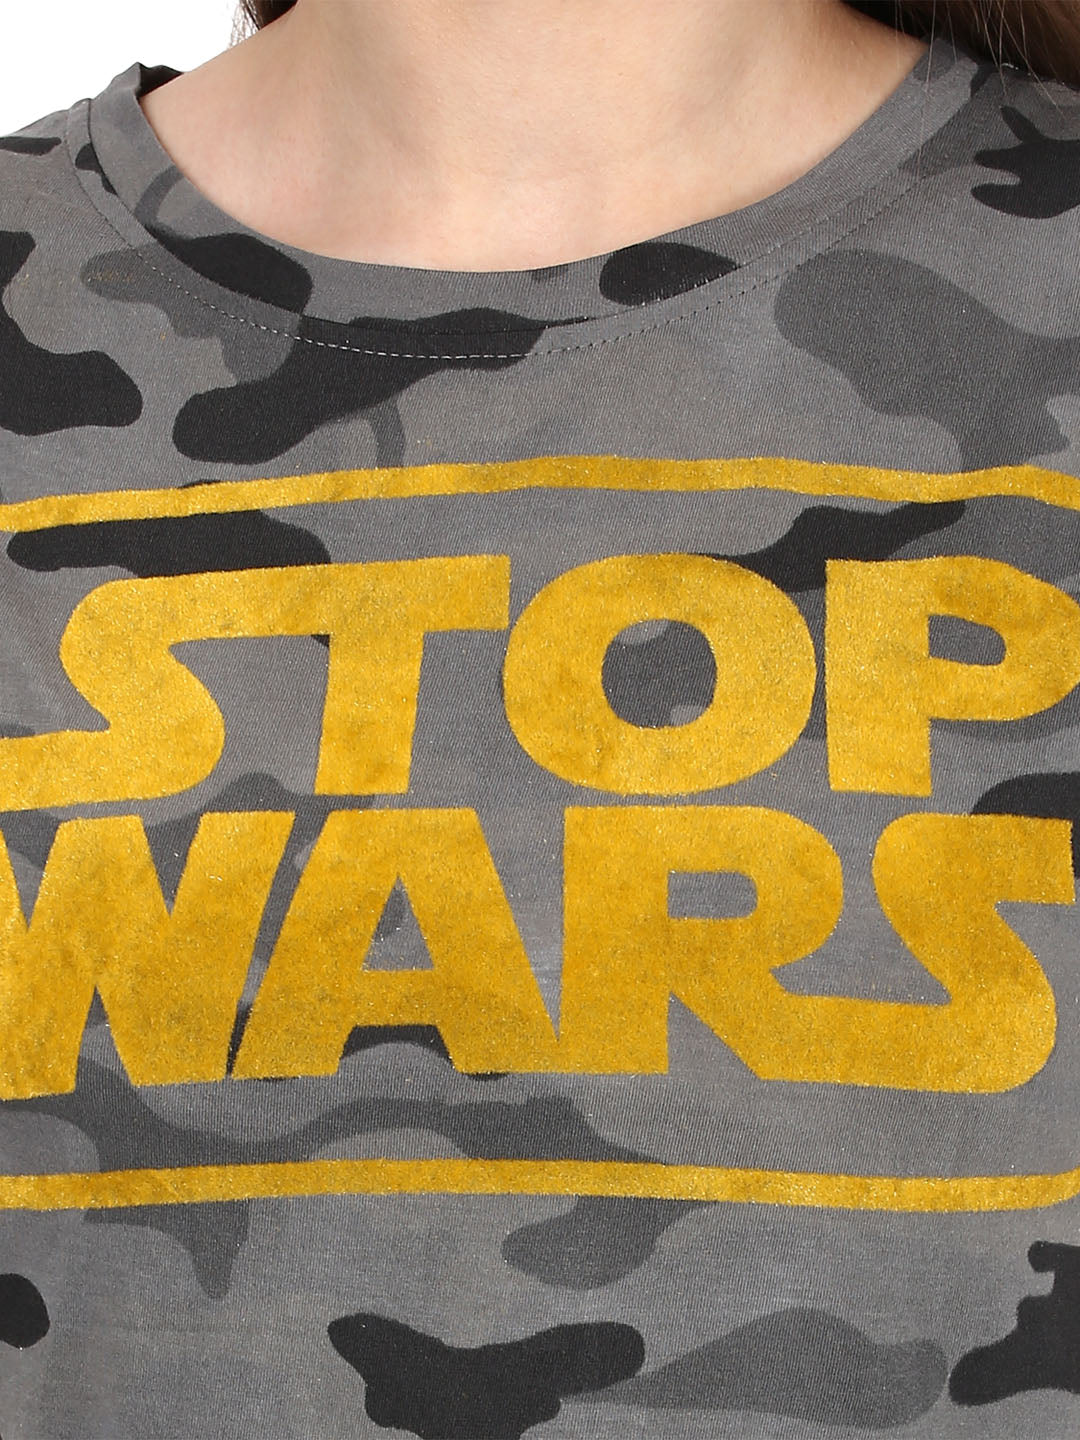 STOP-WAR